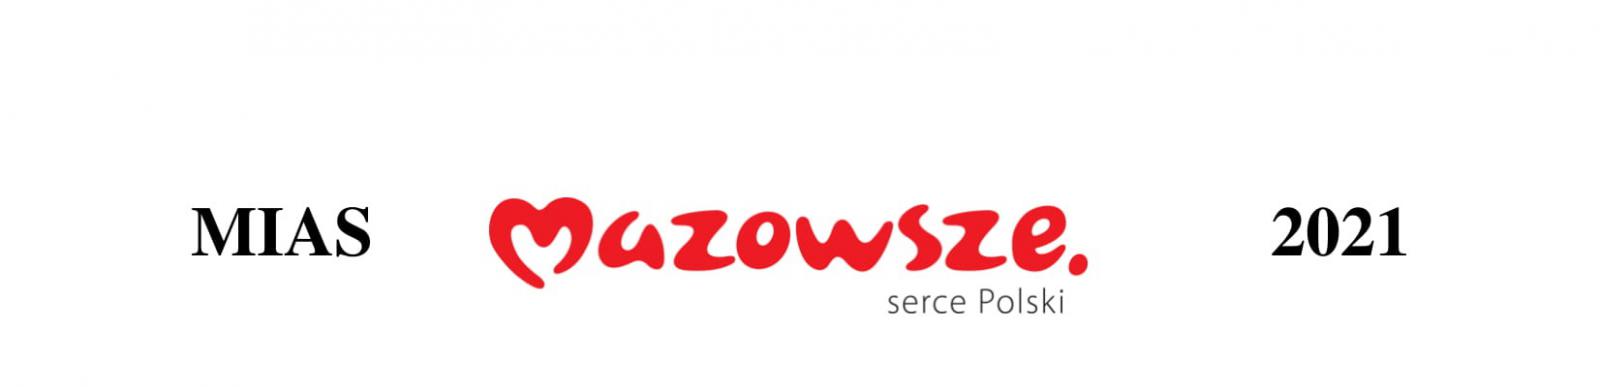 Z lewej strony czarny napis MIAS, na środku czerwony napis Mazowsze, z prawej czarny napis 2021.